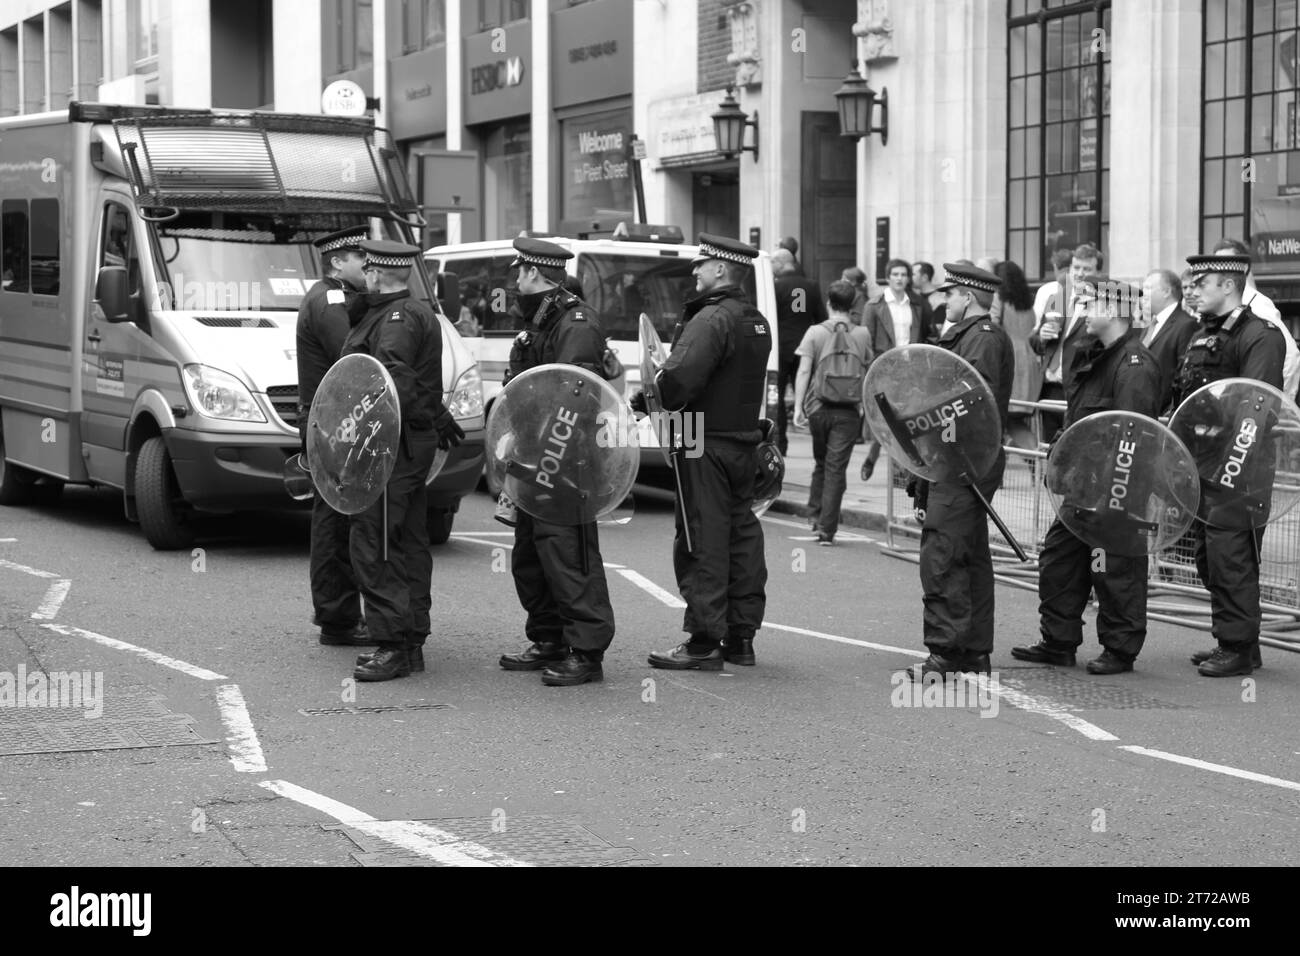 Police en service dans Fleet Street, centre de Londres. Image en noir et blanc de l'uniforme de la police métropolitaine se préparant pour le contrôle de foule d'une manifestation, manifestation. Rues. Londres. Banque D'Images